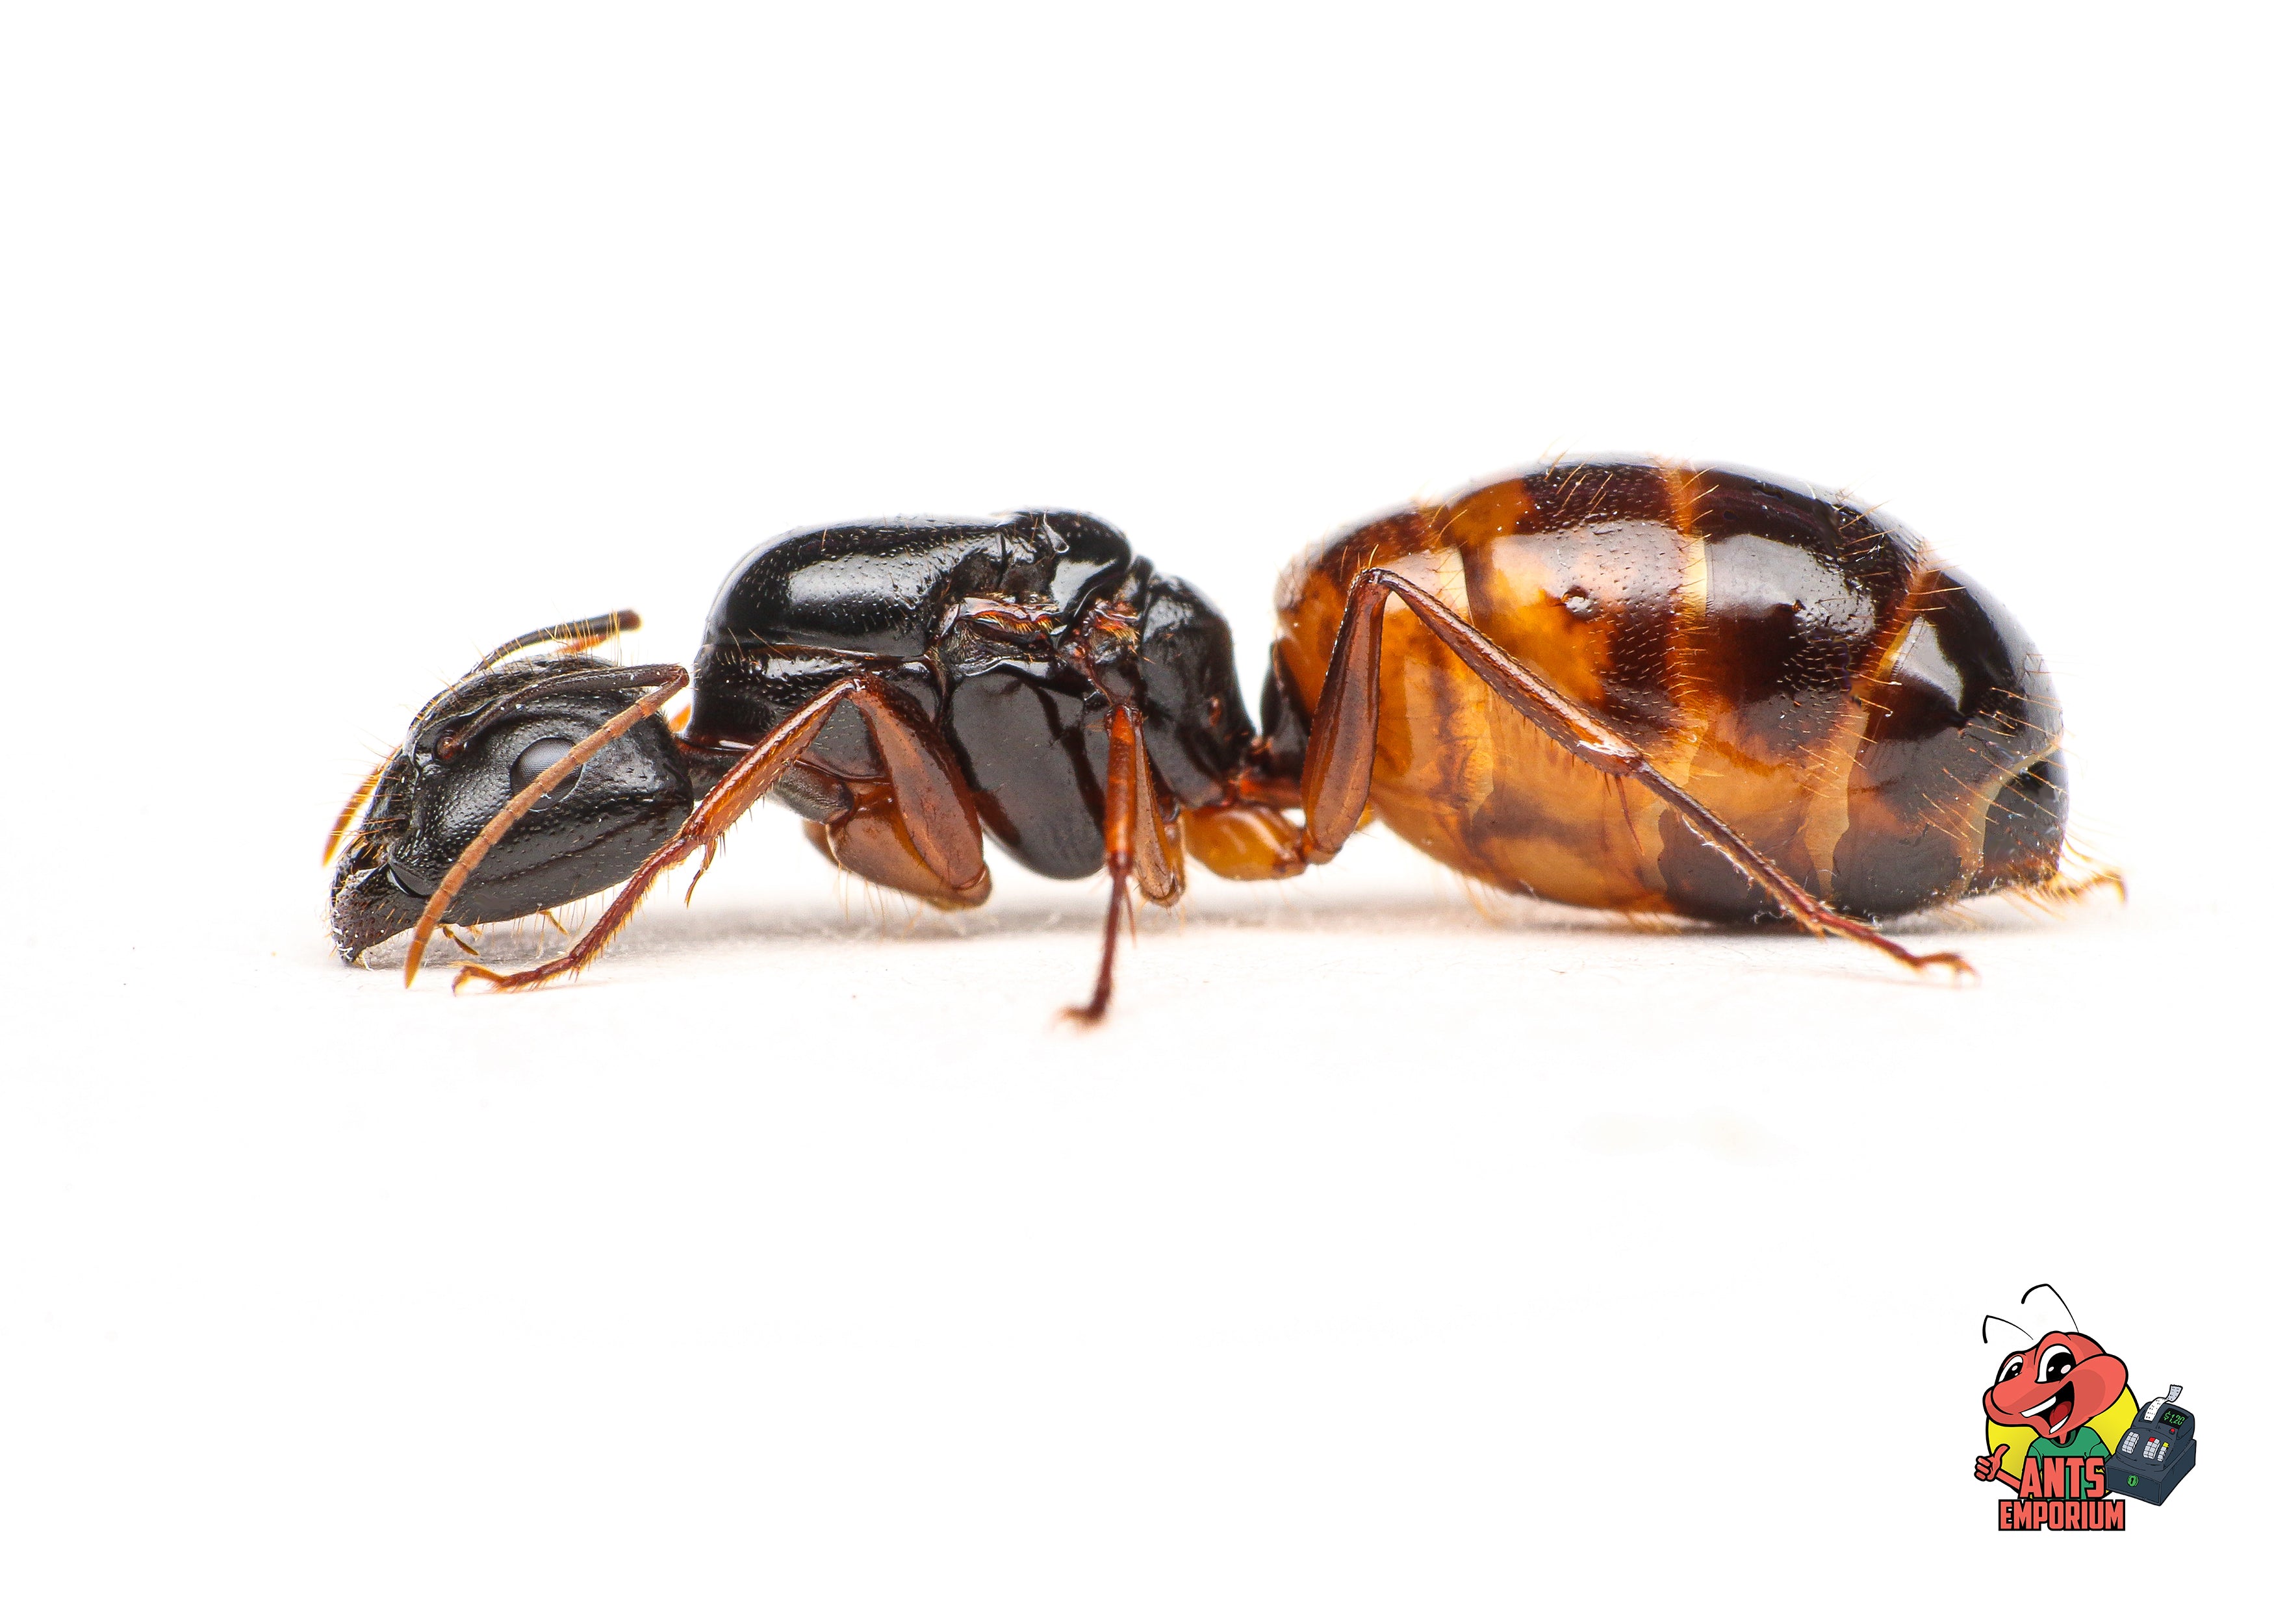 Camponotus sansabeanus - AntsEmporium